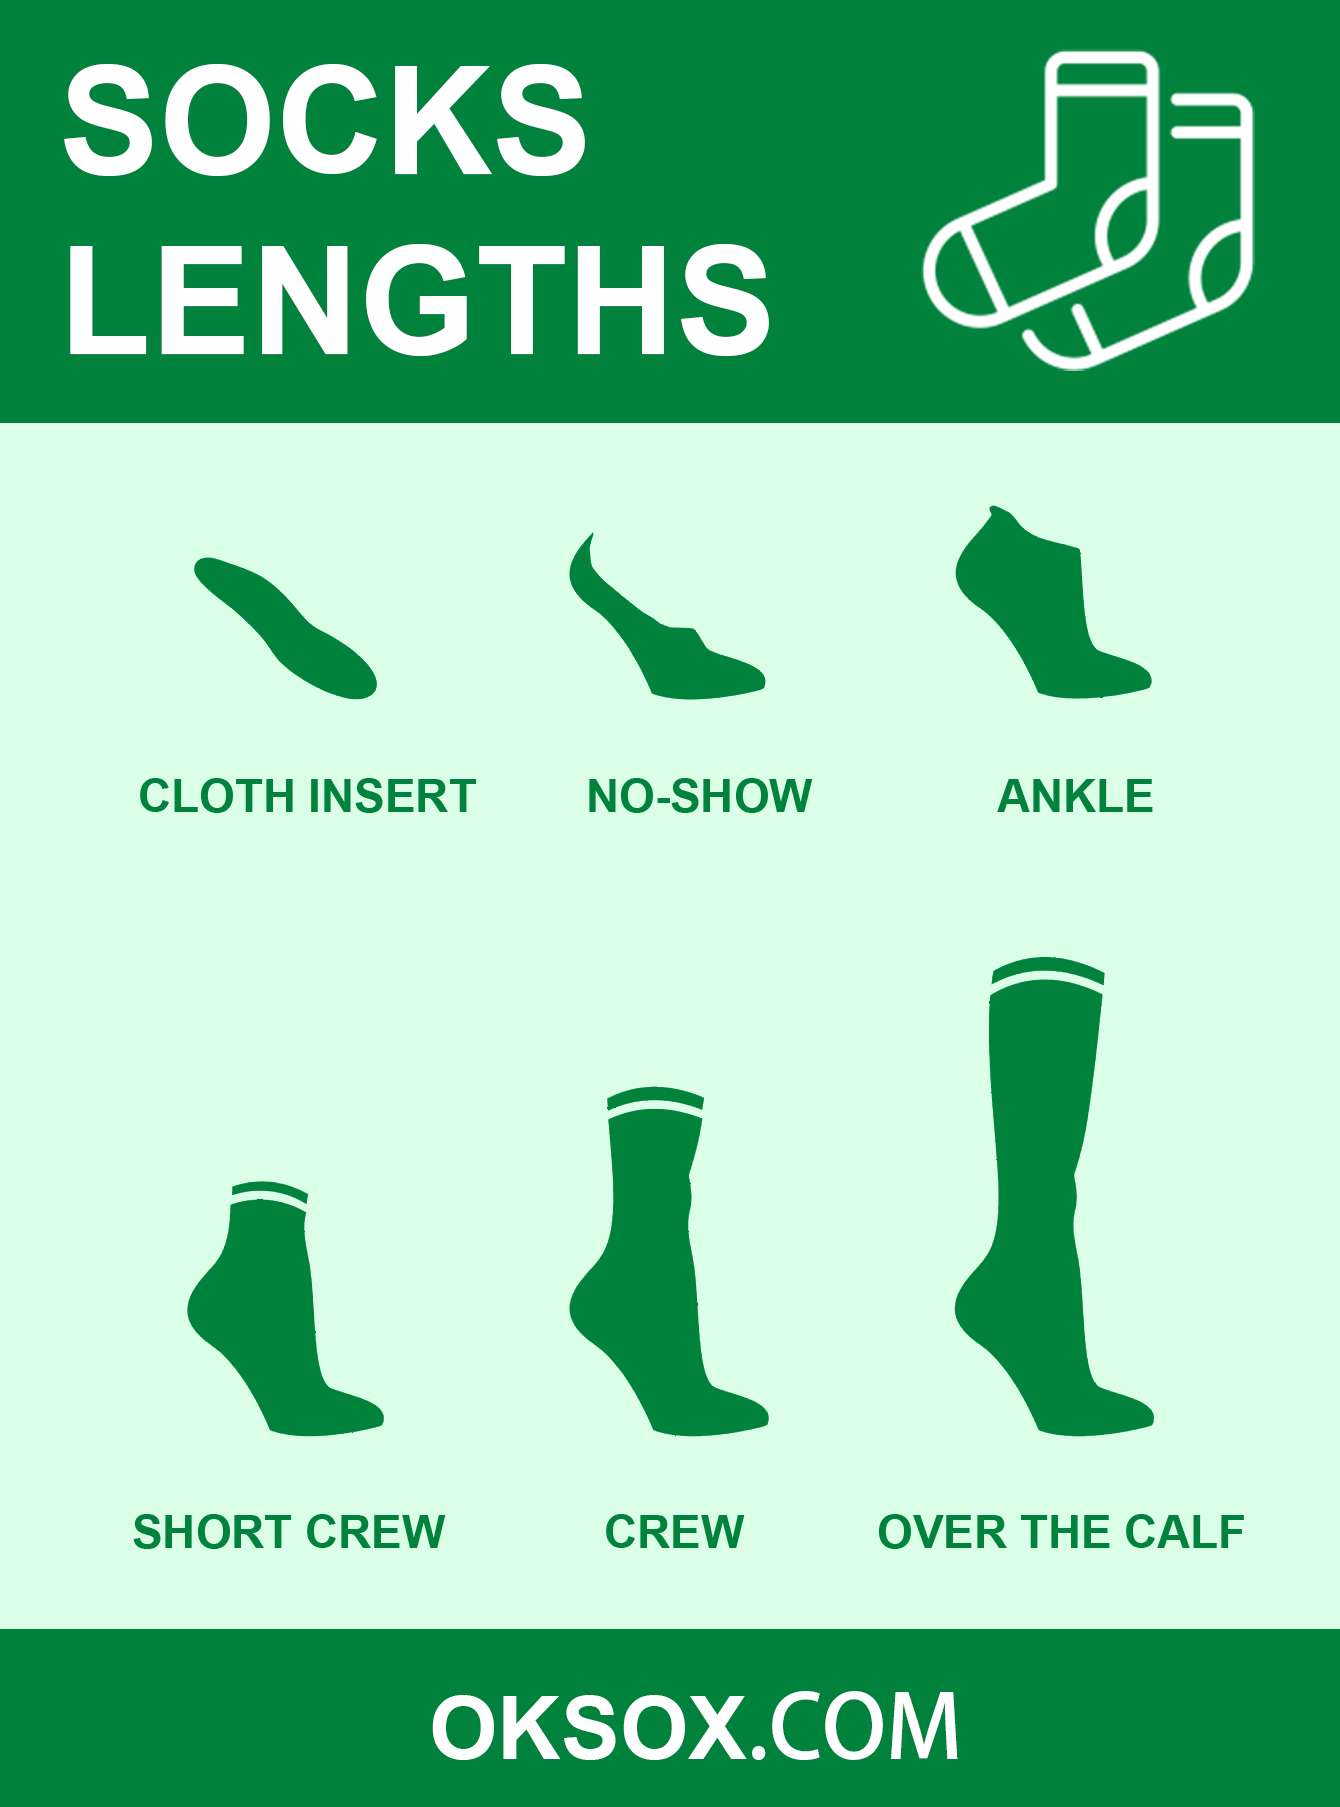 Montrer les longueurs de chaussettes gratuitement pour épingler ou partager